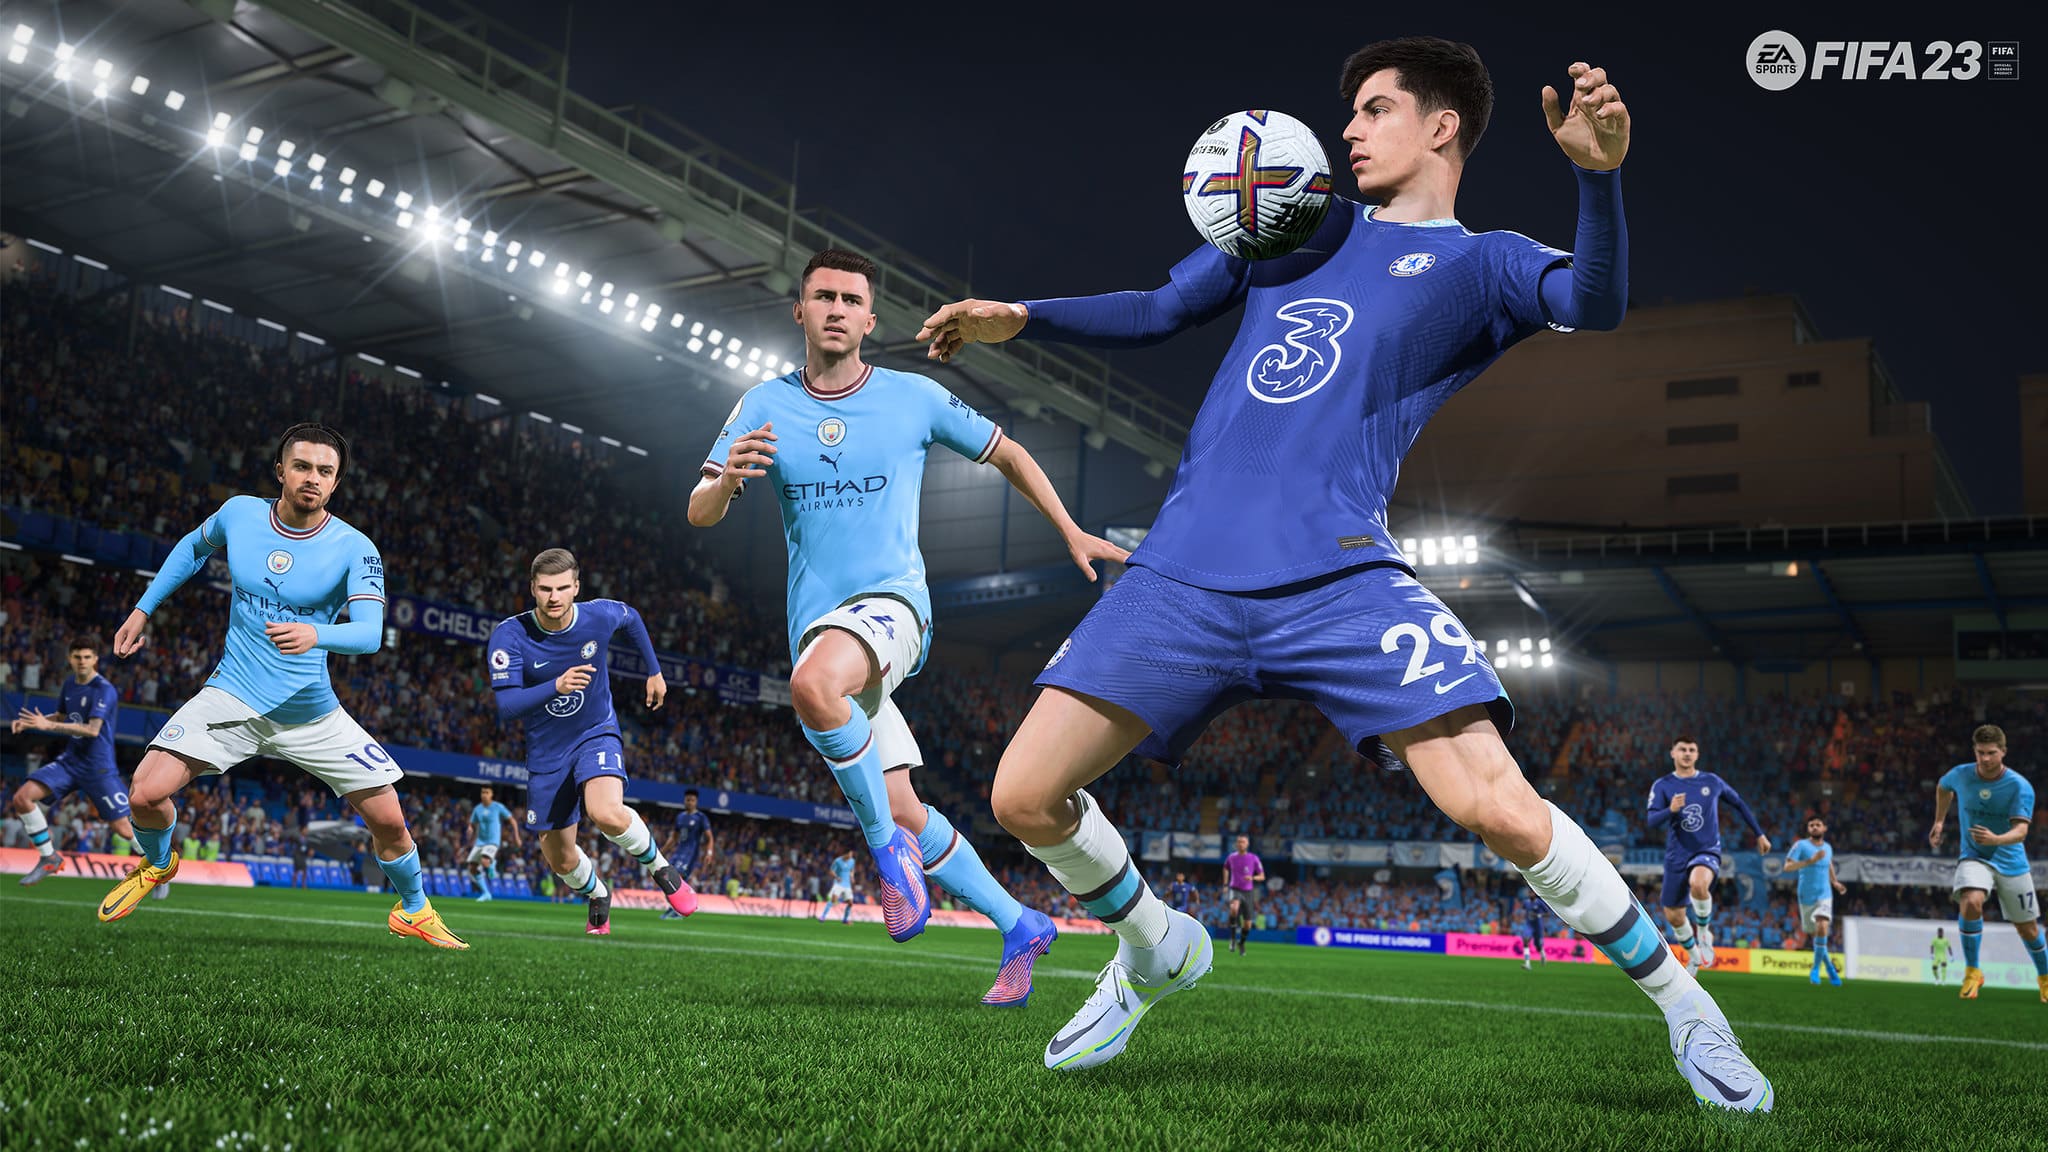 FIFA 23 Update 1.000.008